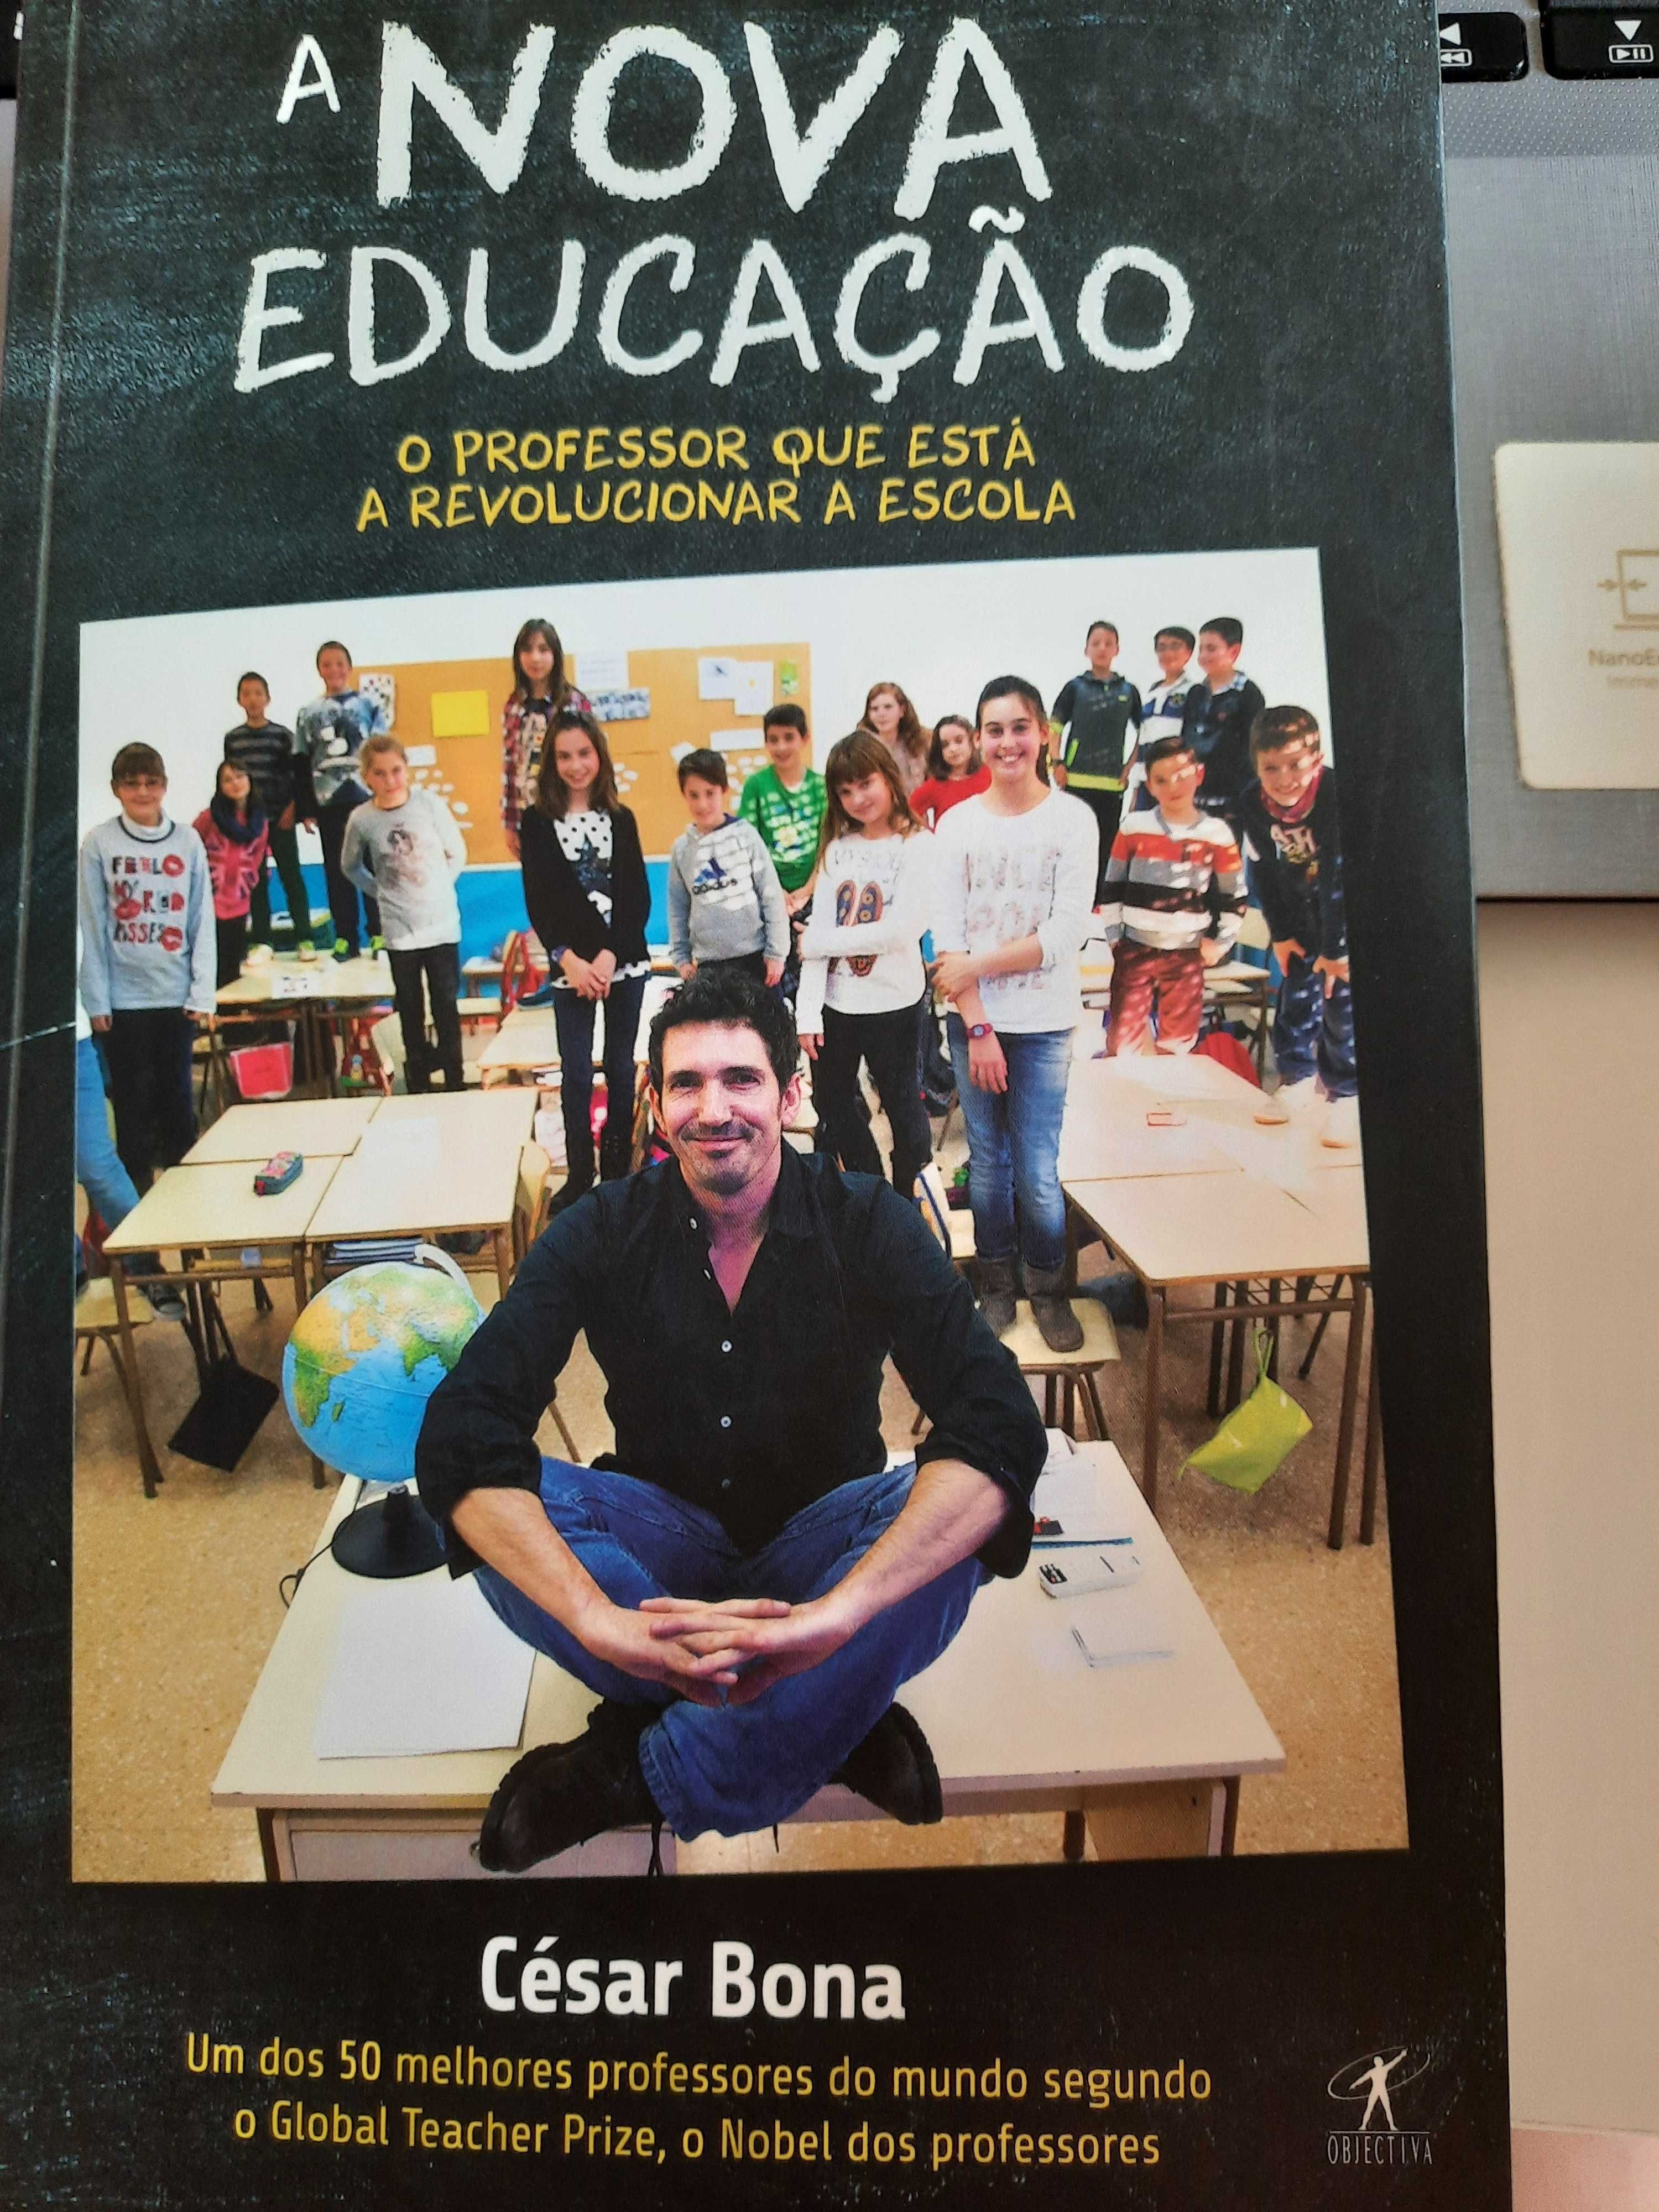 "A Nova Educação - O Professor que está a revolucionar a Escola"-Livro